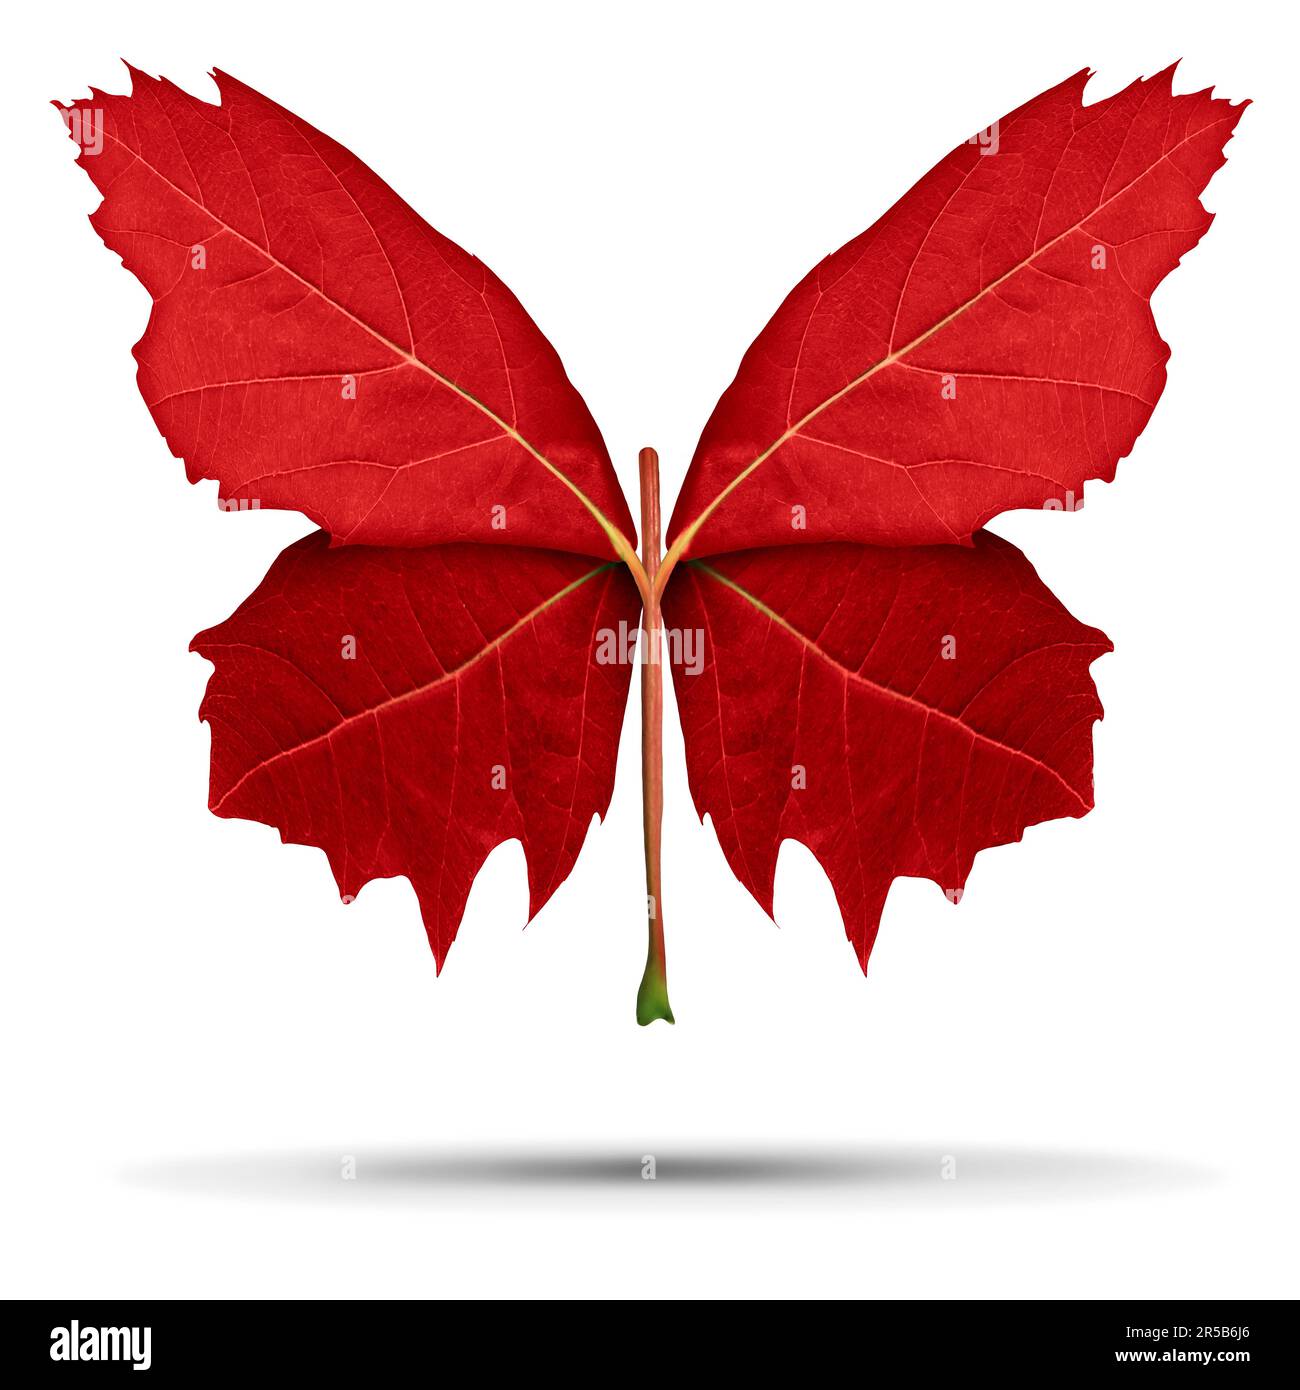 Feuille d'érable rouge en forme d'ailes ouvertes d'un papillon comme métaphore de la nature pour le Canada et la culture canadienne ou découverte d'apprentissage et une transformation Banque D'Images